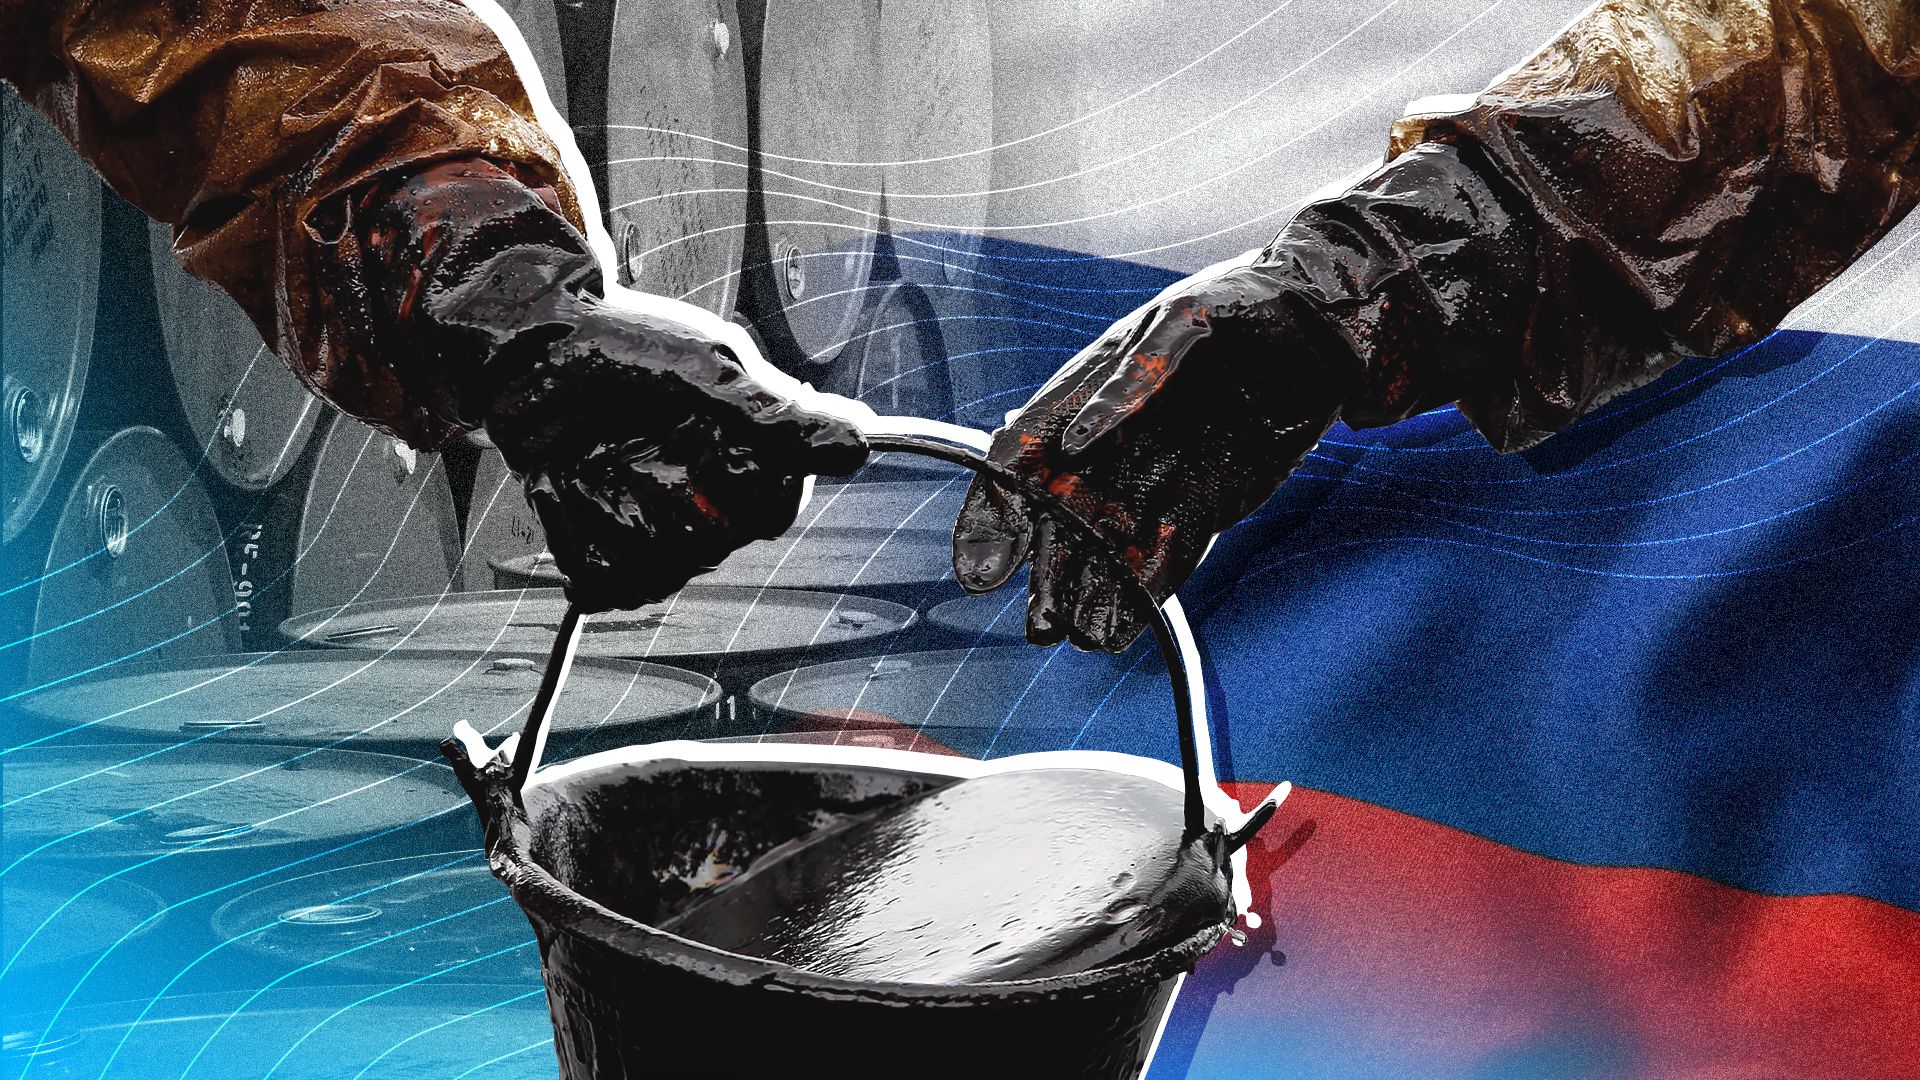 Российская нефть